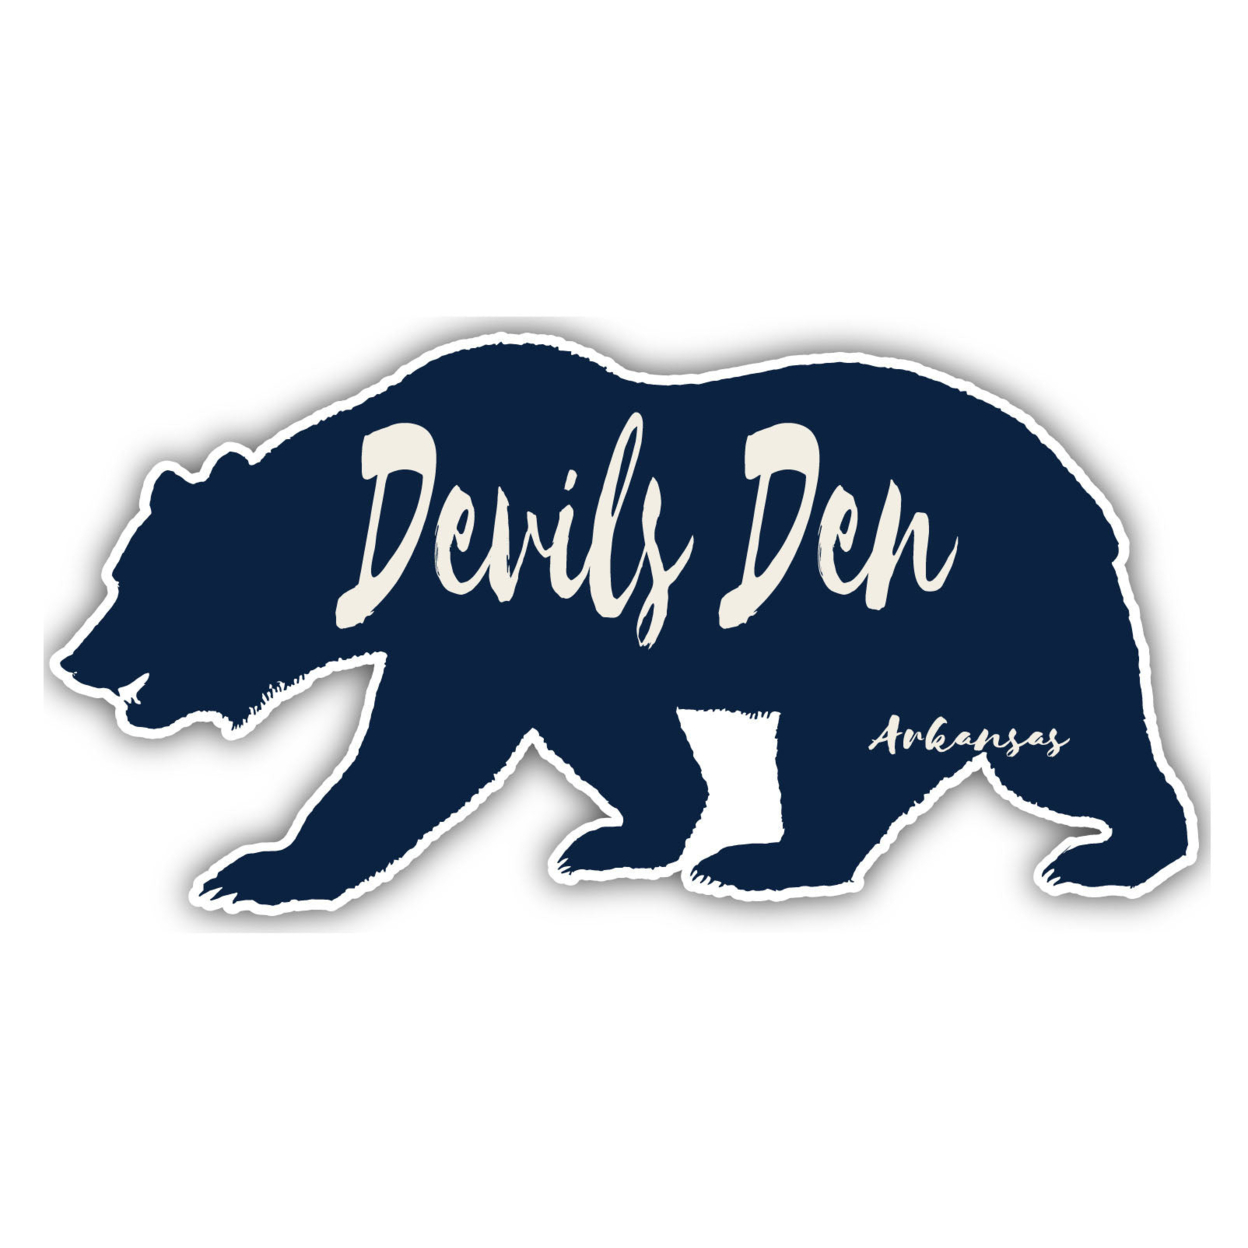 Devils Den Arkansas Souvenir Decorative Stickers (Choose Theme And Size) - 4-Pack, 6-Inch, Bear